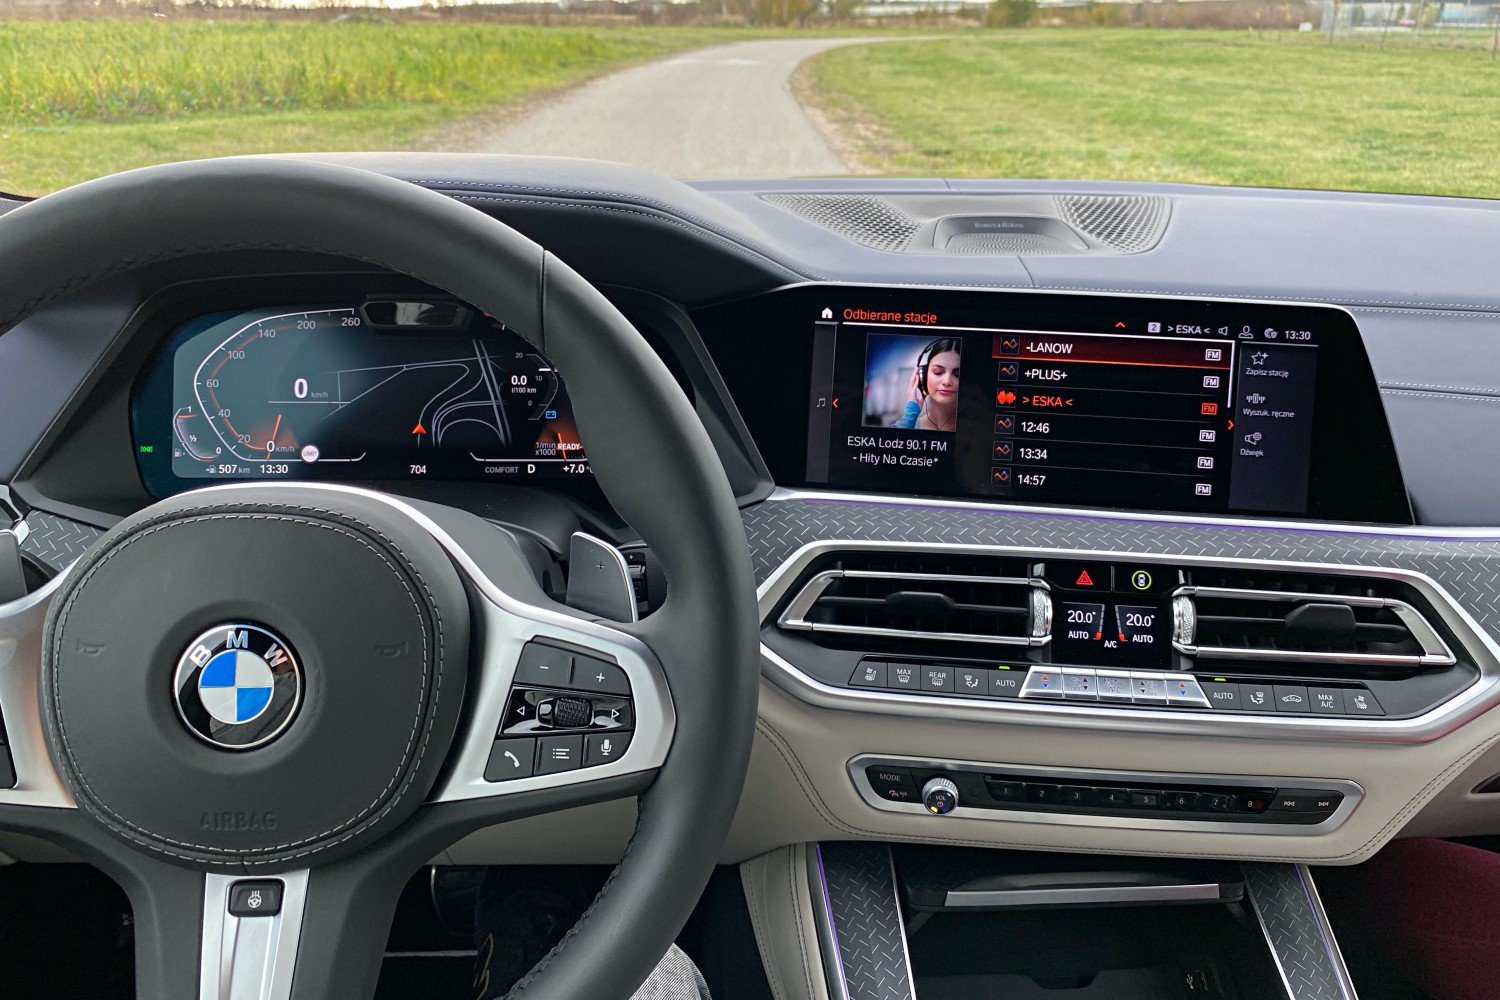 Das größte Update des BMW iDrive seit Jahren – neue Funktionen gehen an über eine Million Bayern 52